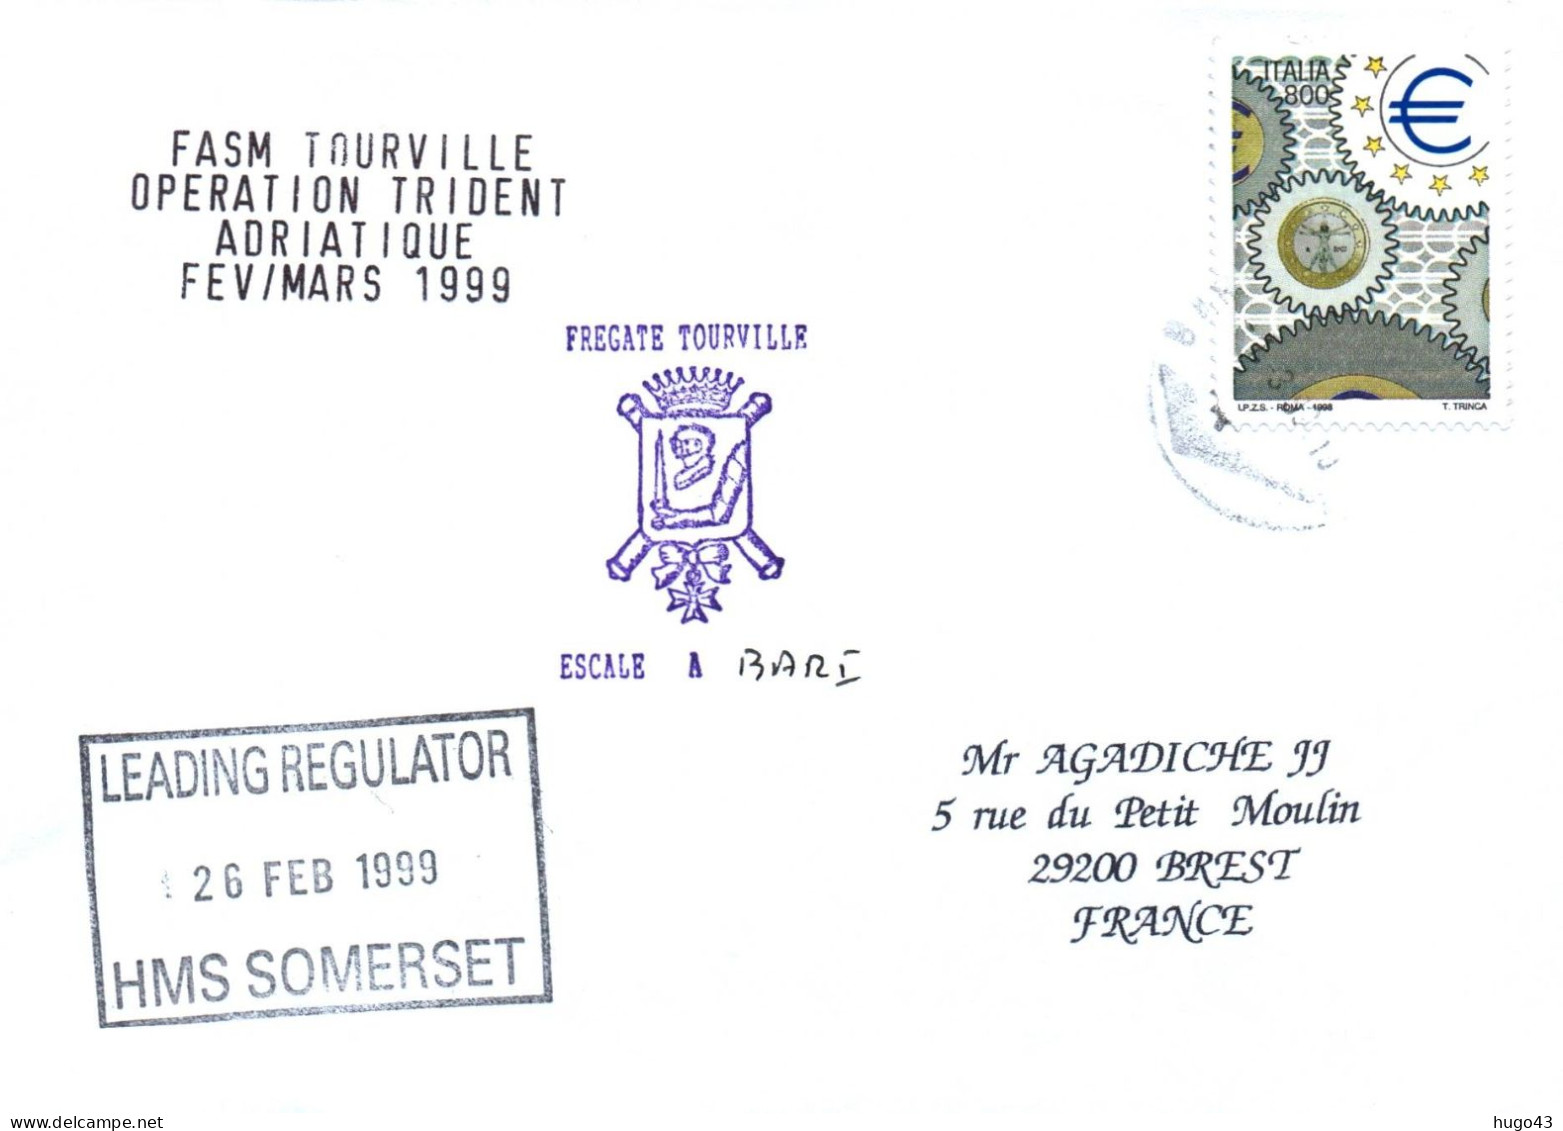 ENVELOPPE AVEC CACHET FREGATE TOURVILLE - OPERATION TRIDENT ADRIATIQUE FEV / MARS 1999 - ESCALE A BARI ITALIE LE 26/2/99 - Poste Navale